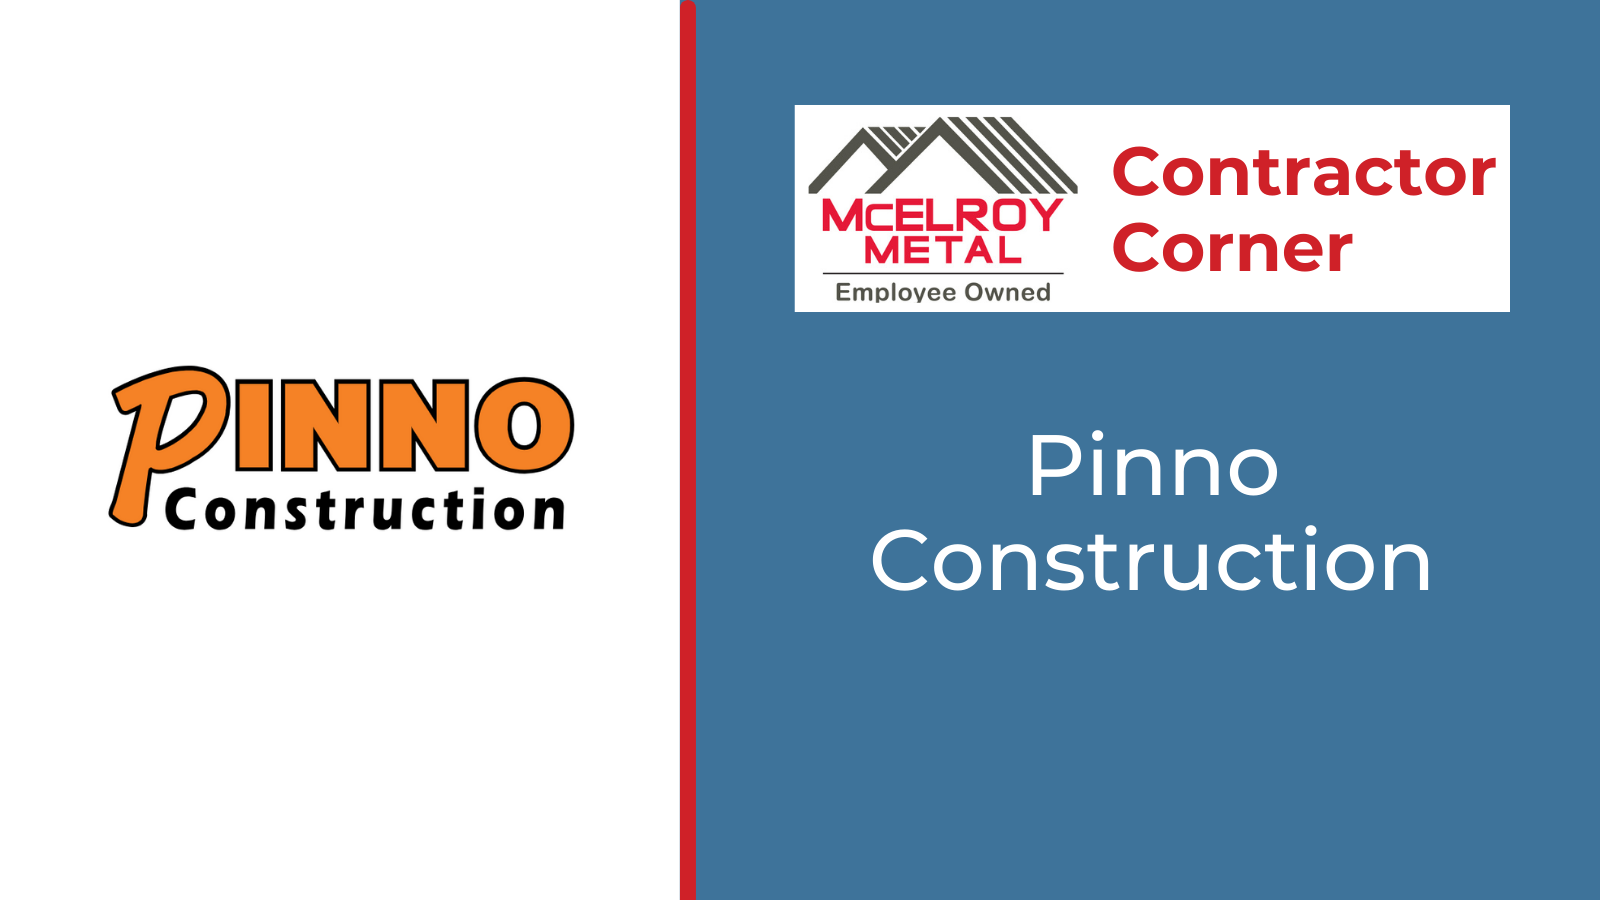 Contractor Corner - Pinno Construction